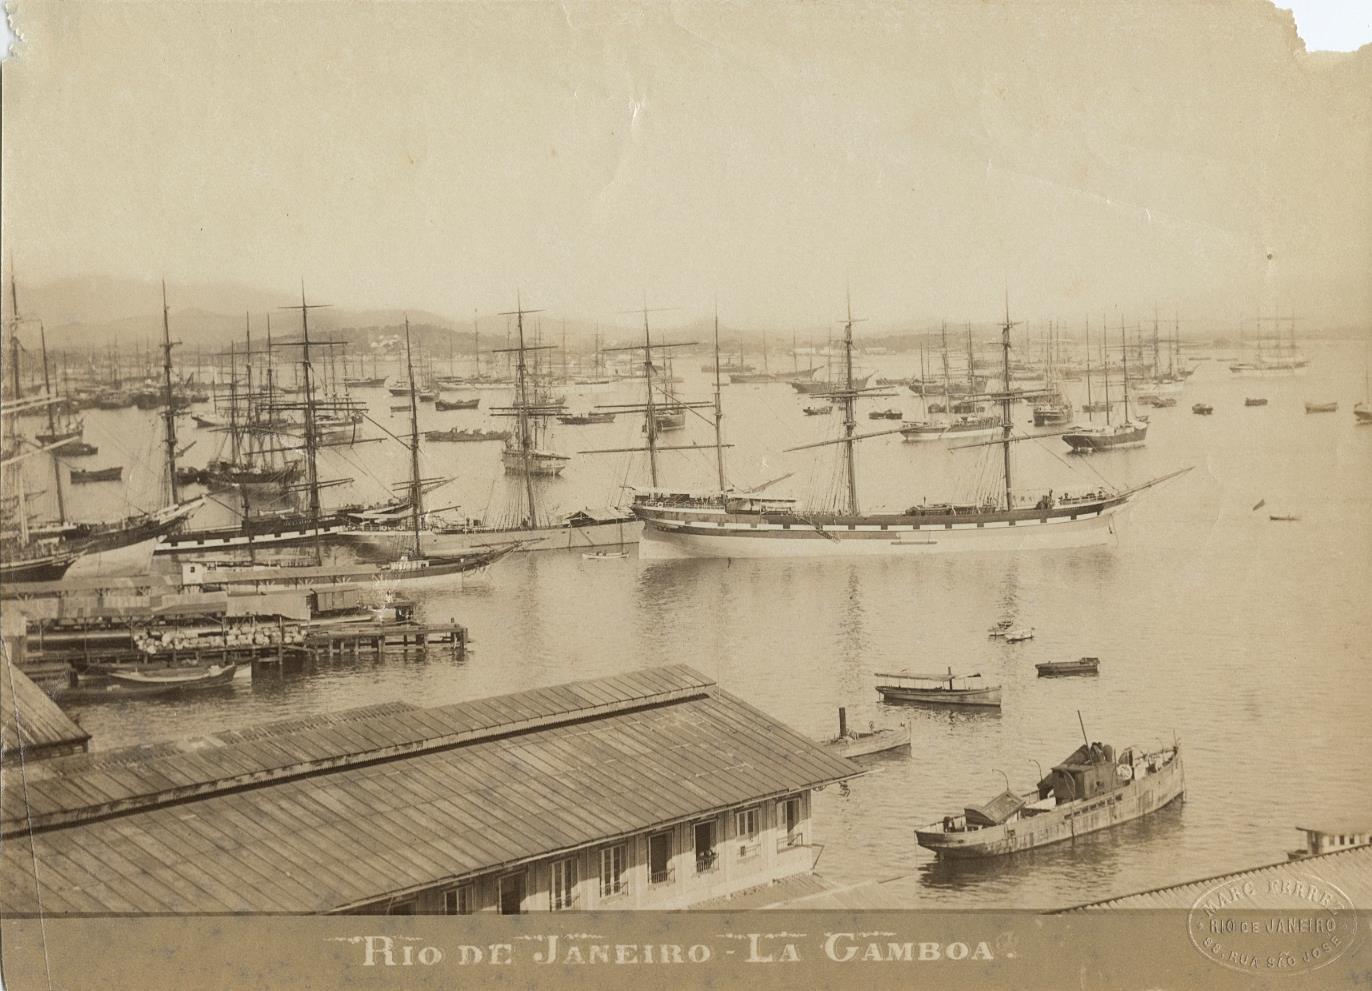 c. 1880's La Gamboa, Rio de Janiero Photo by Marc Ferrez